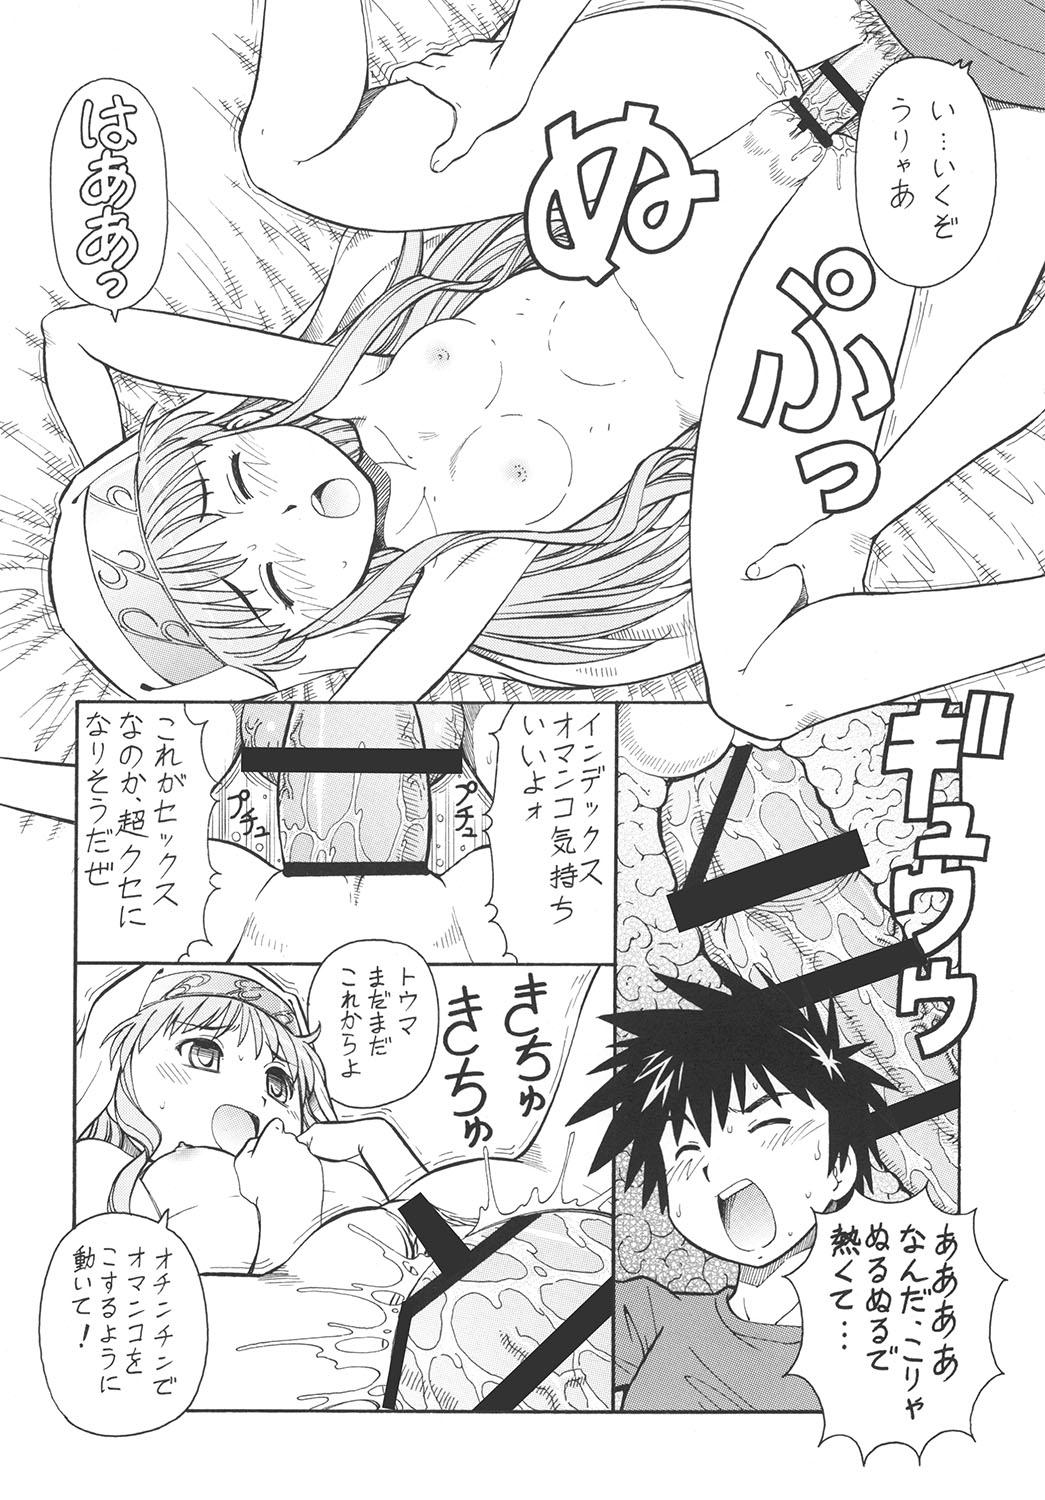 Joven Toaru Omeko ni Railgun - Toaru kagaku no railgun Toaru majutsu no index Masturbandose - Page 11